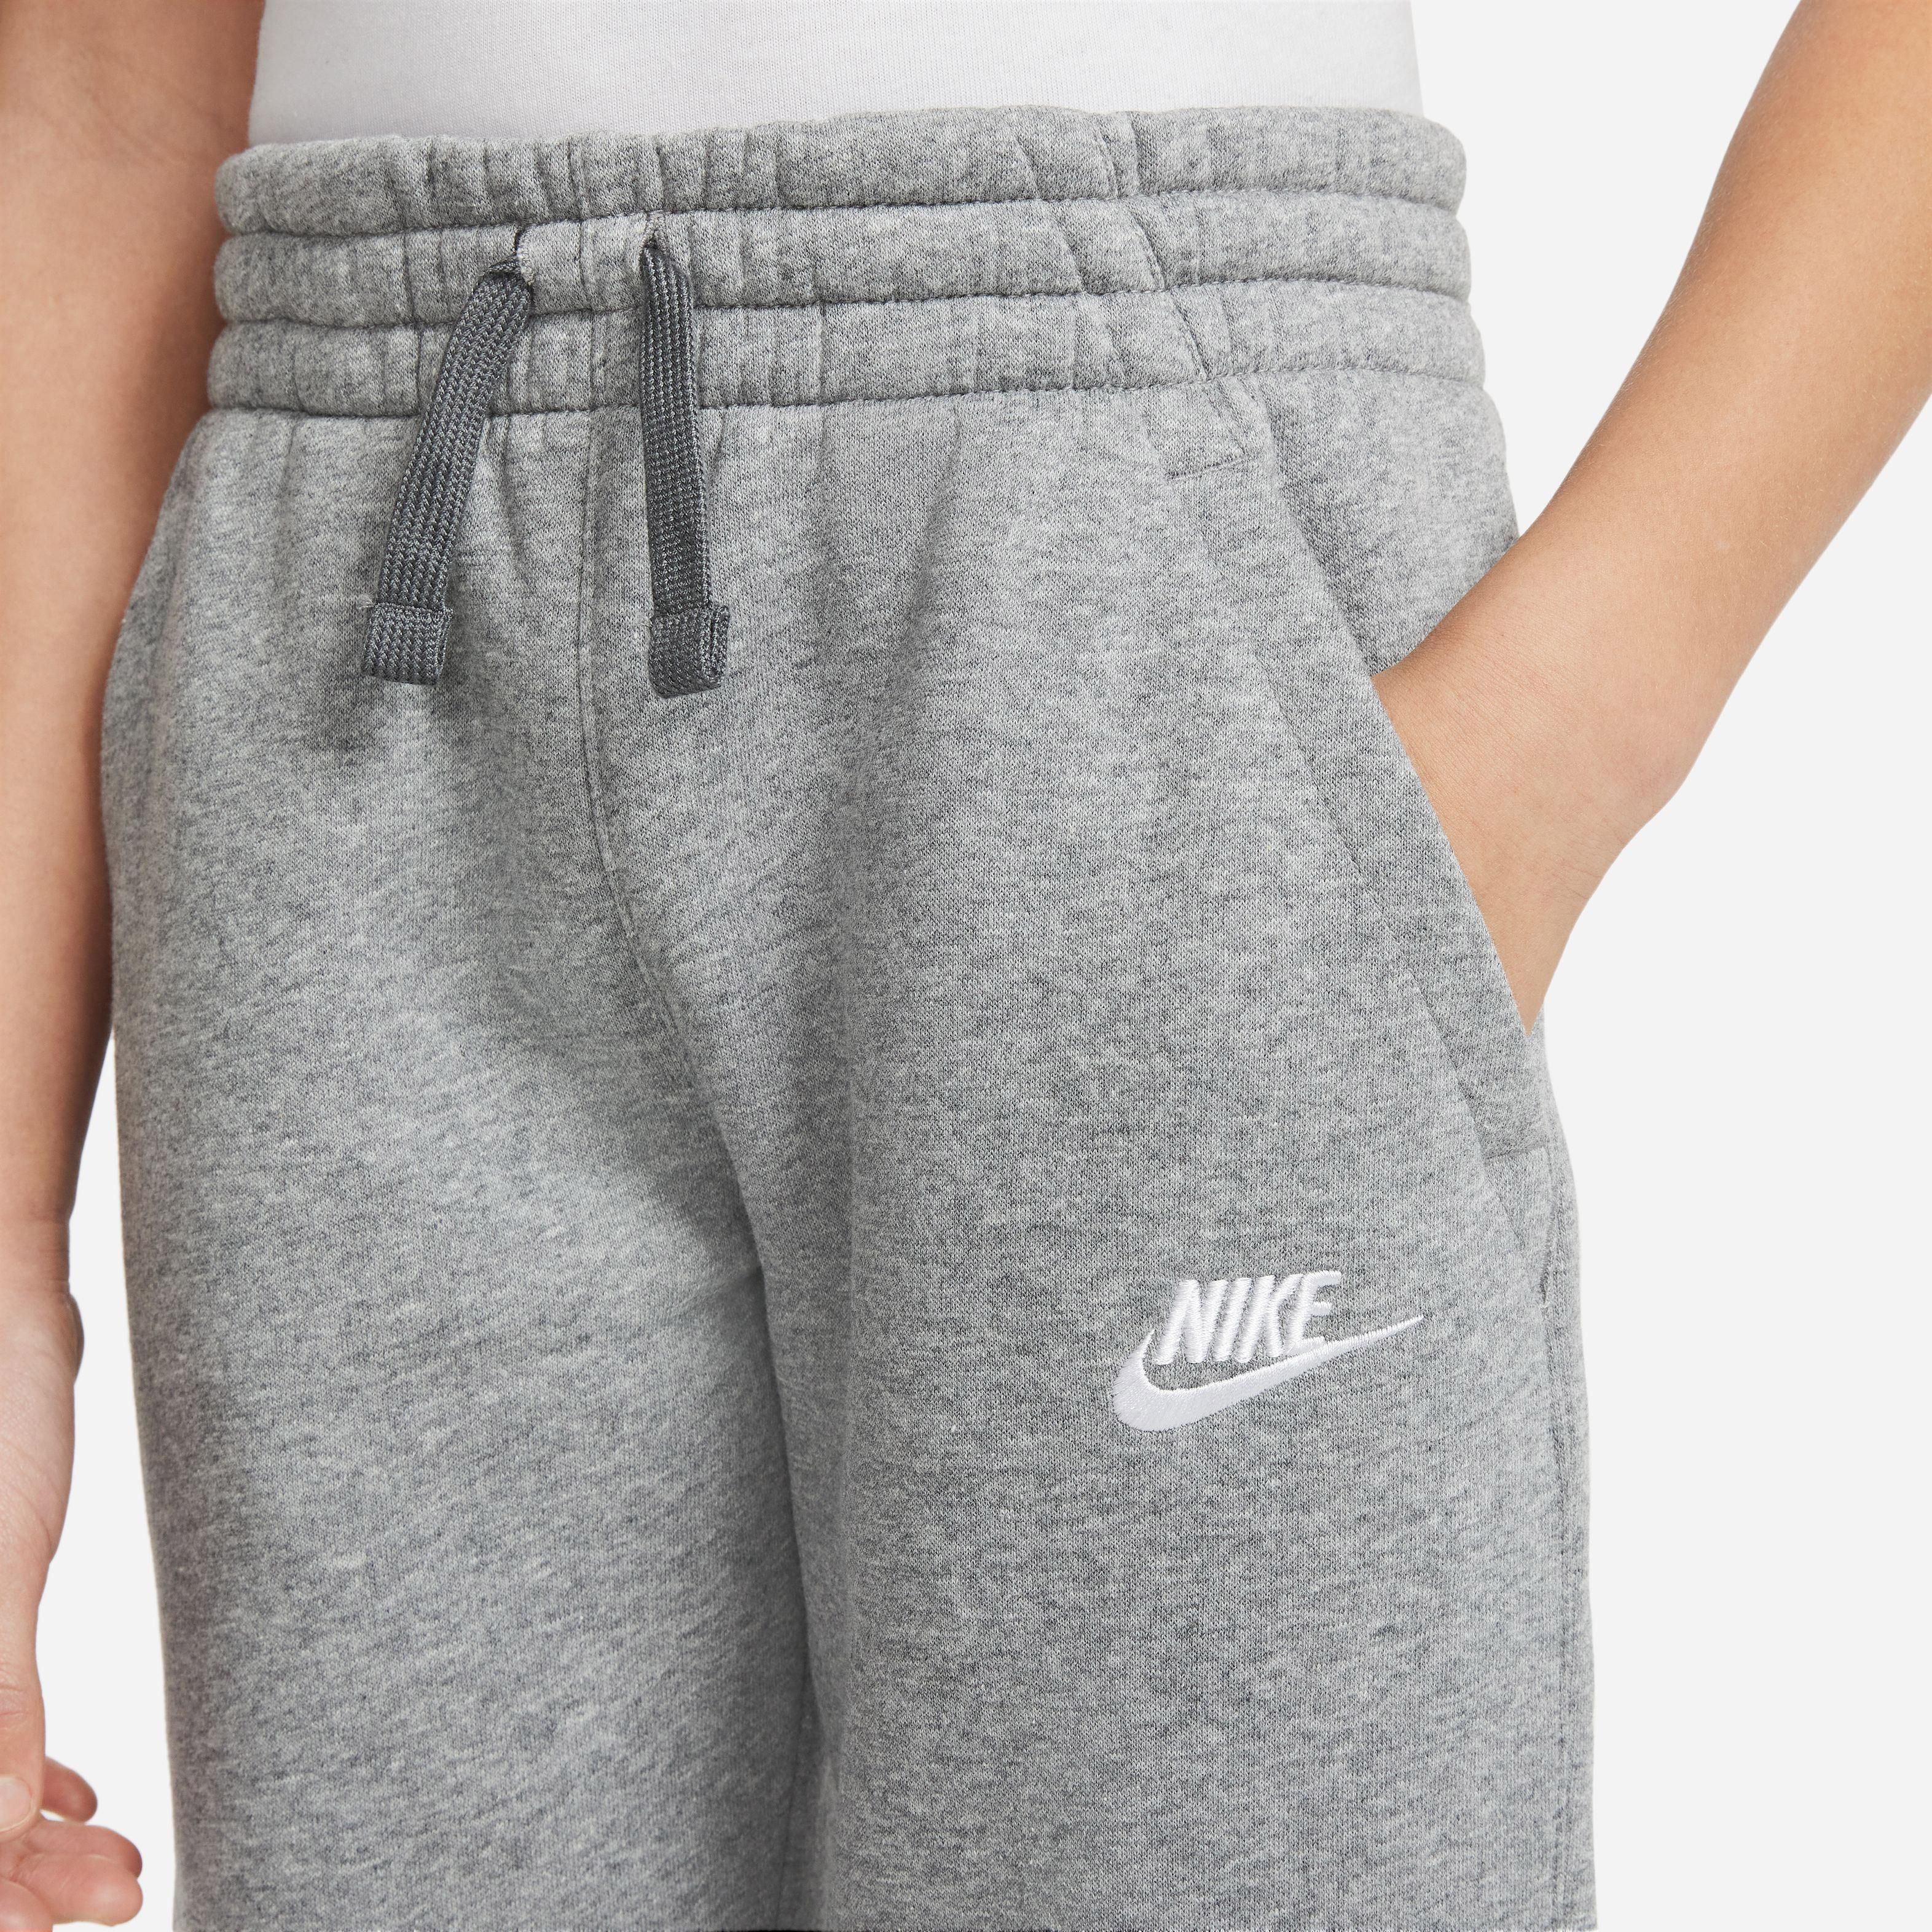 im carbon grey-white Online NSW von Jungen kaufen CORE SportScheck Nike heather-dark Trainingsanzug Shop